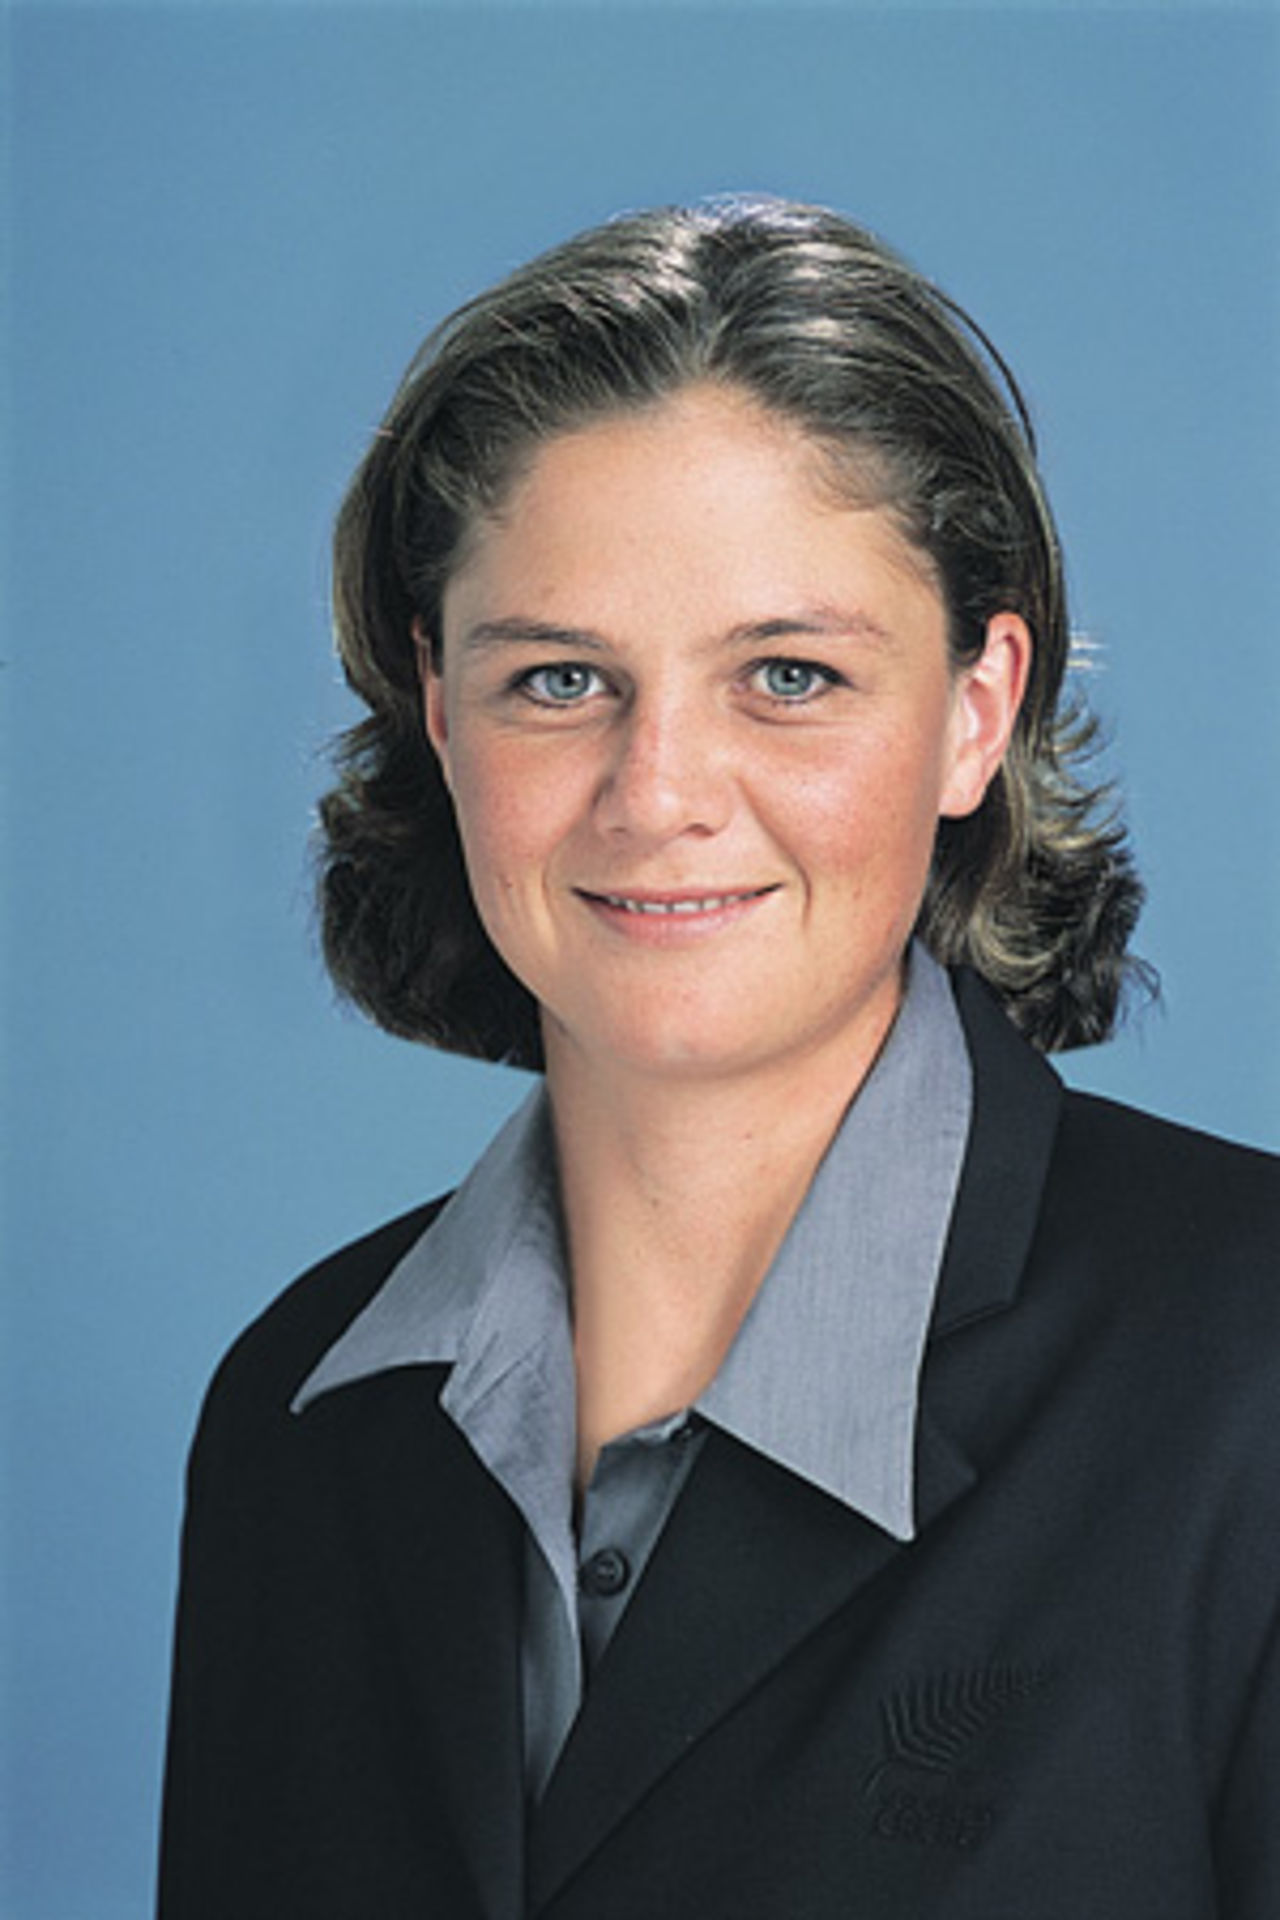 Portrait of Rebecca Rolls - New Zealand women's player in the 2002 season.